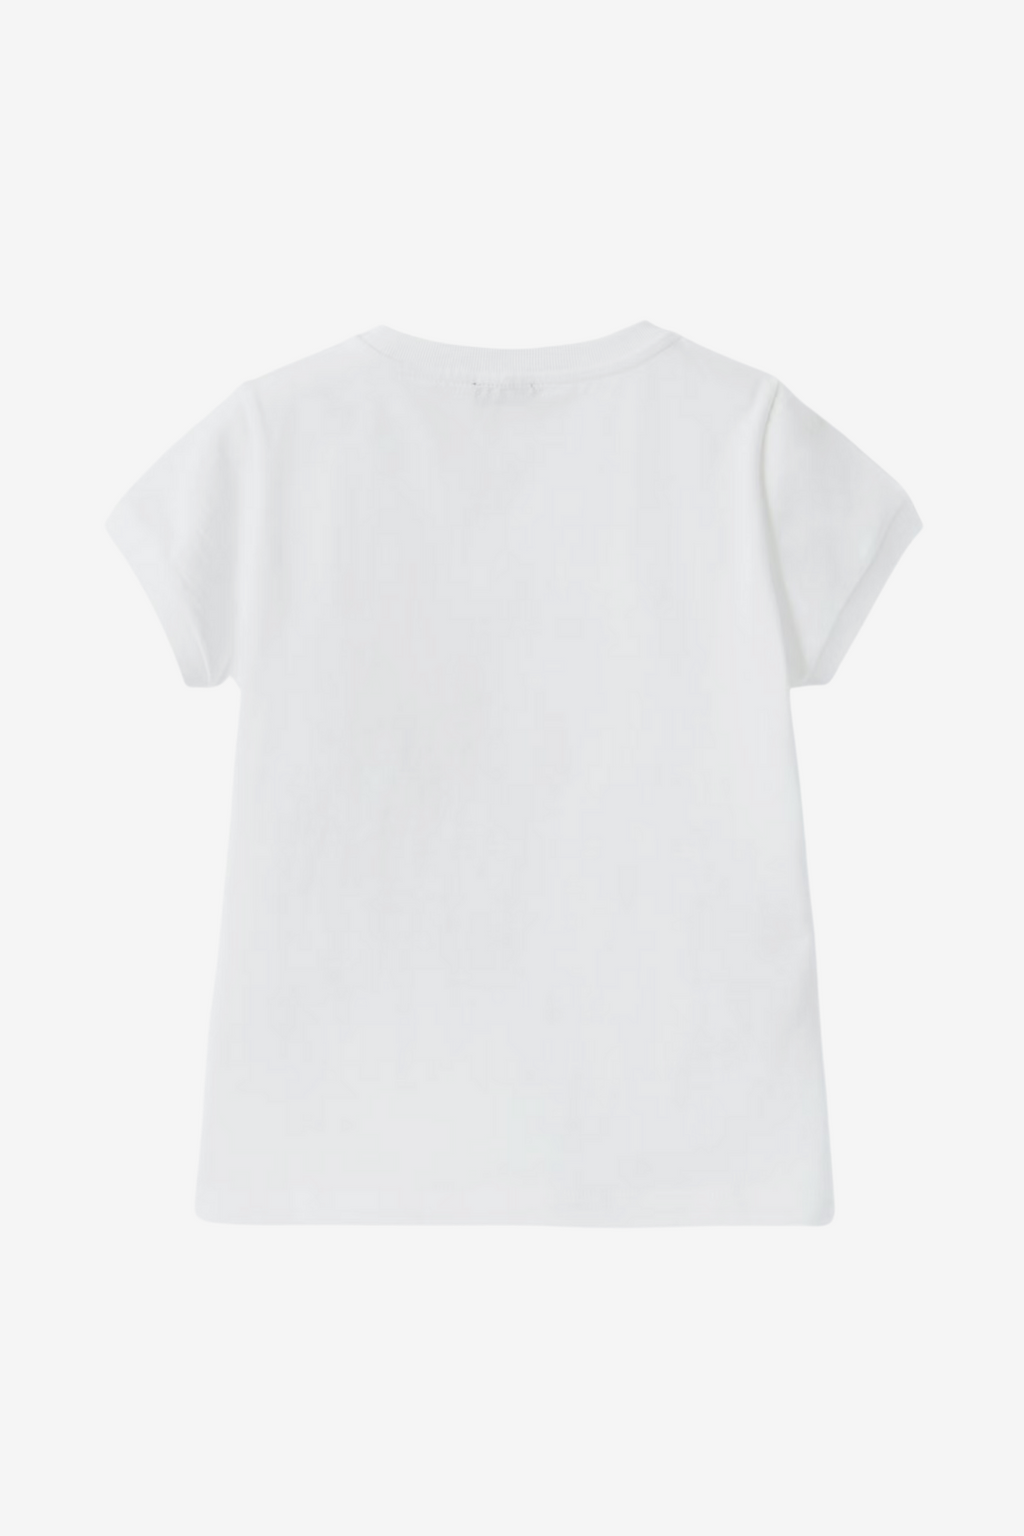 Weißes T-Shirt mit Mädchen